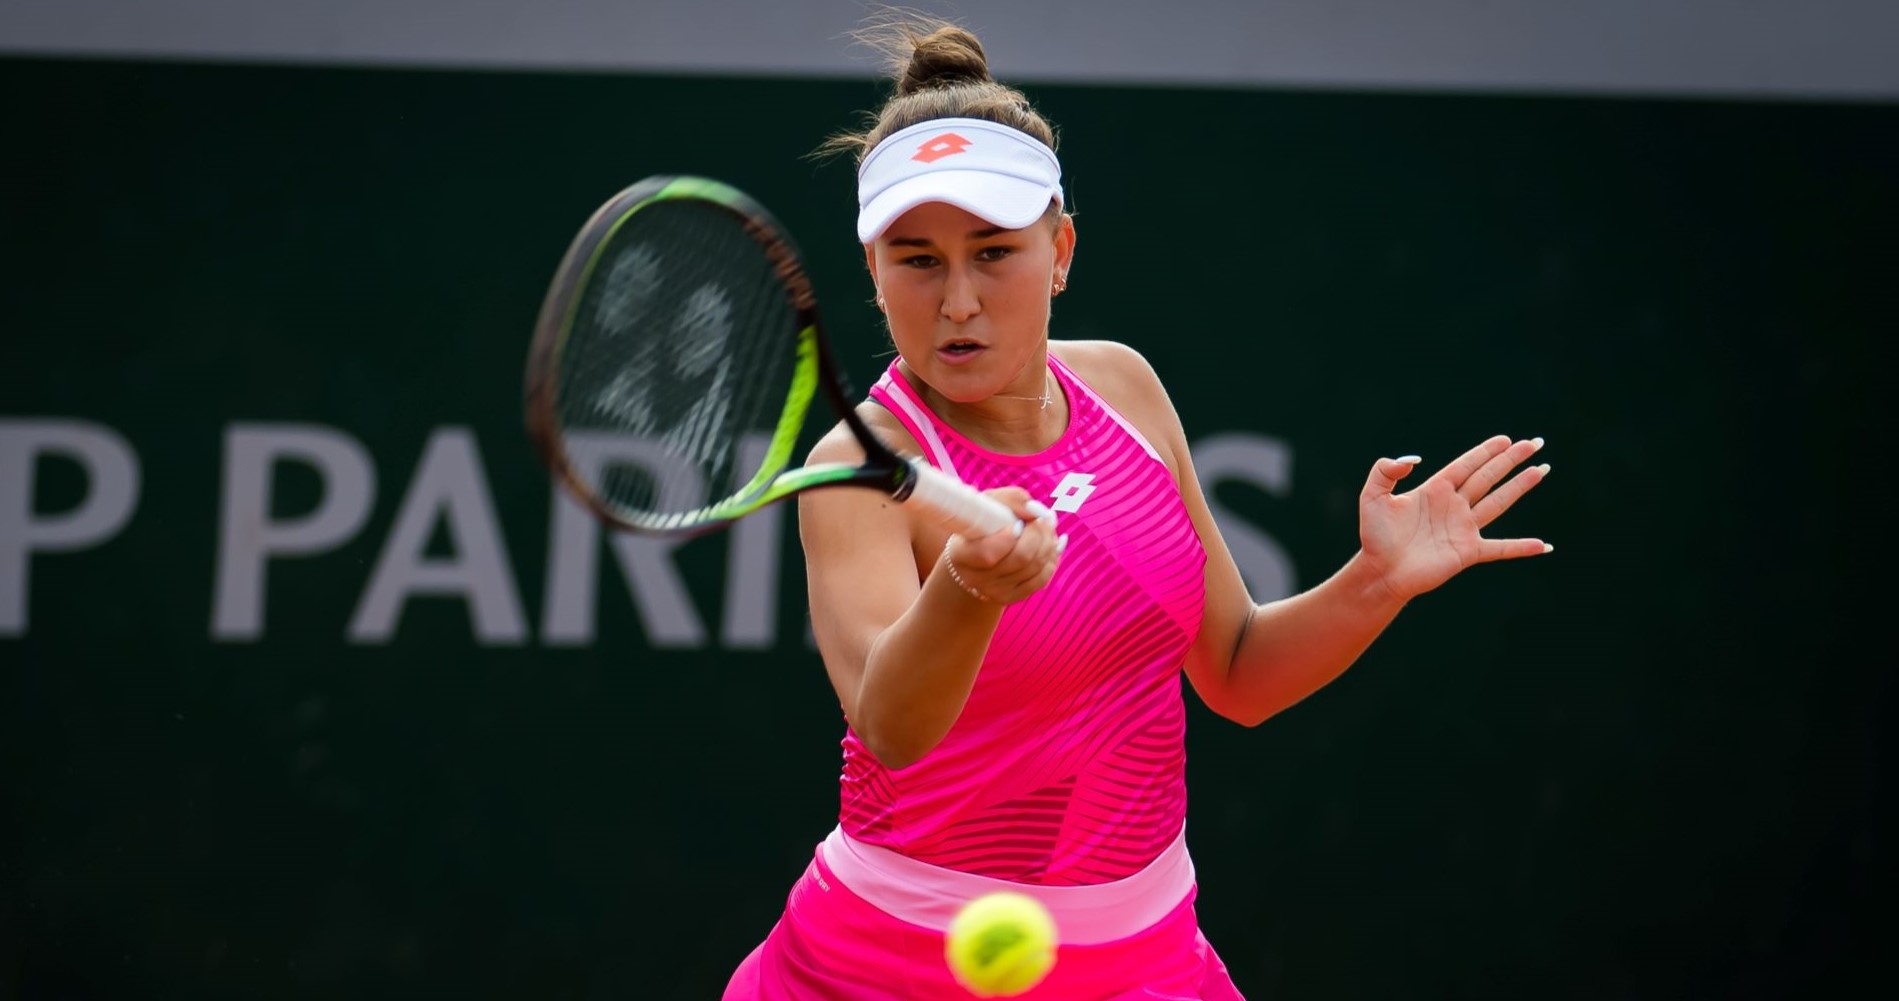 Tennis, WTA – Rabat Open 2024: Rakhimova takes out Rosatello